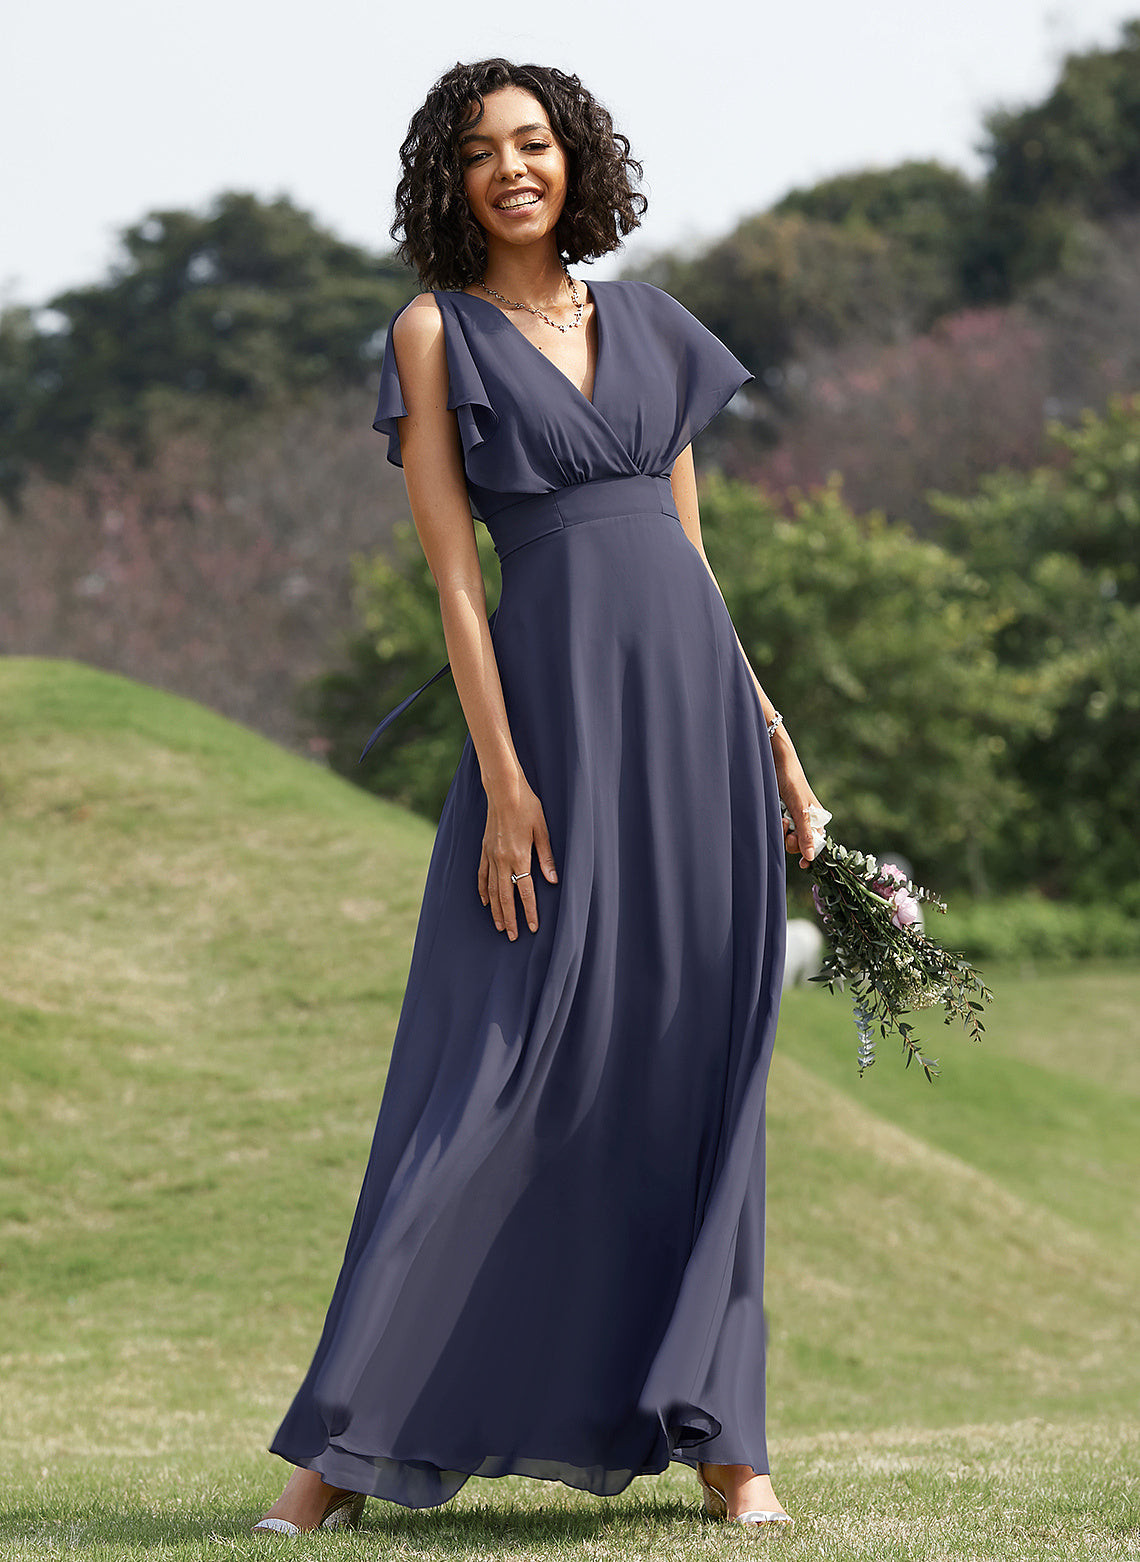 Floor-Length V-neck Neckline Fabric Straps Length A-Line Silhouette Ella Bridesmaid Dresses